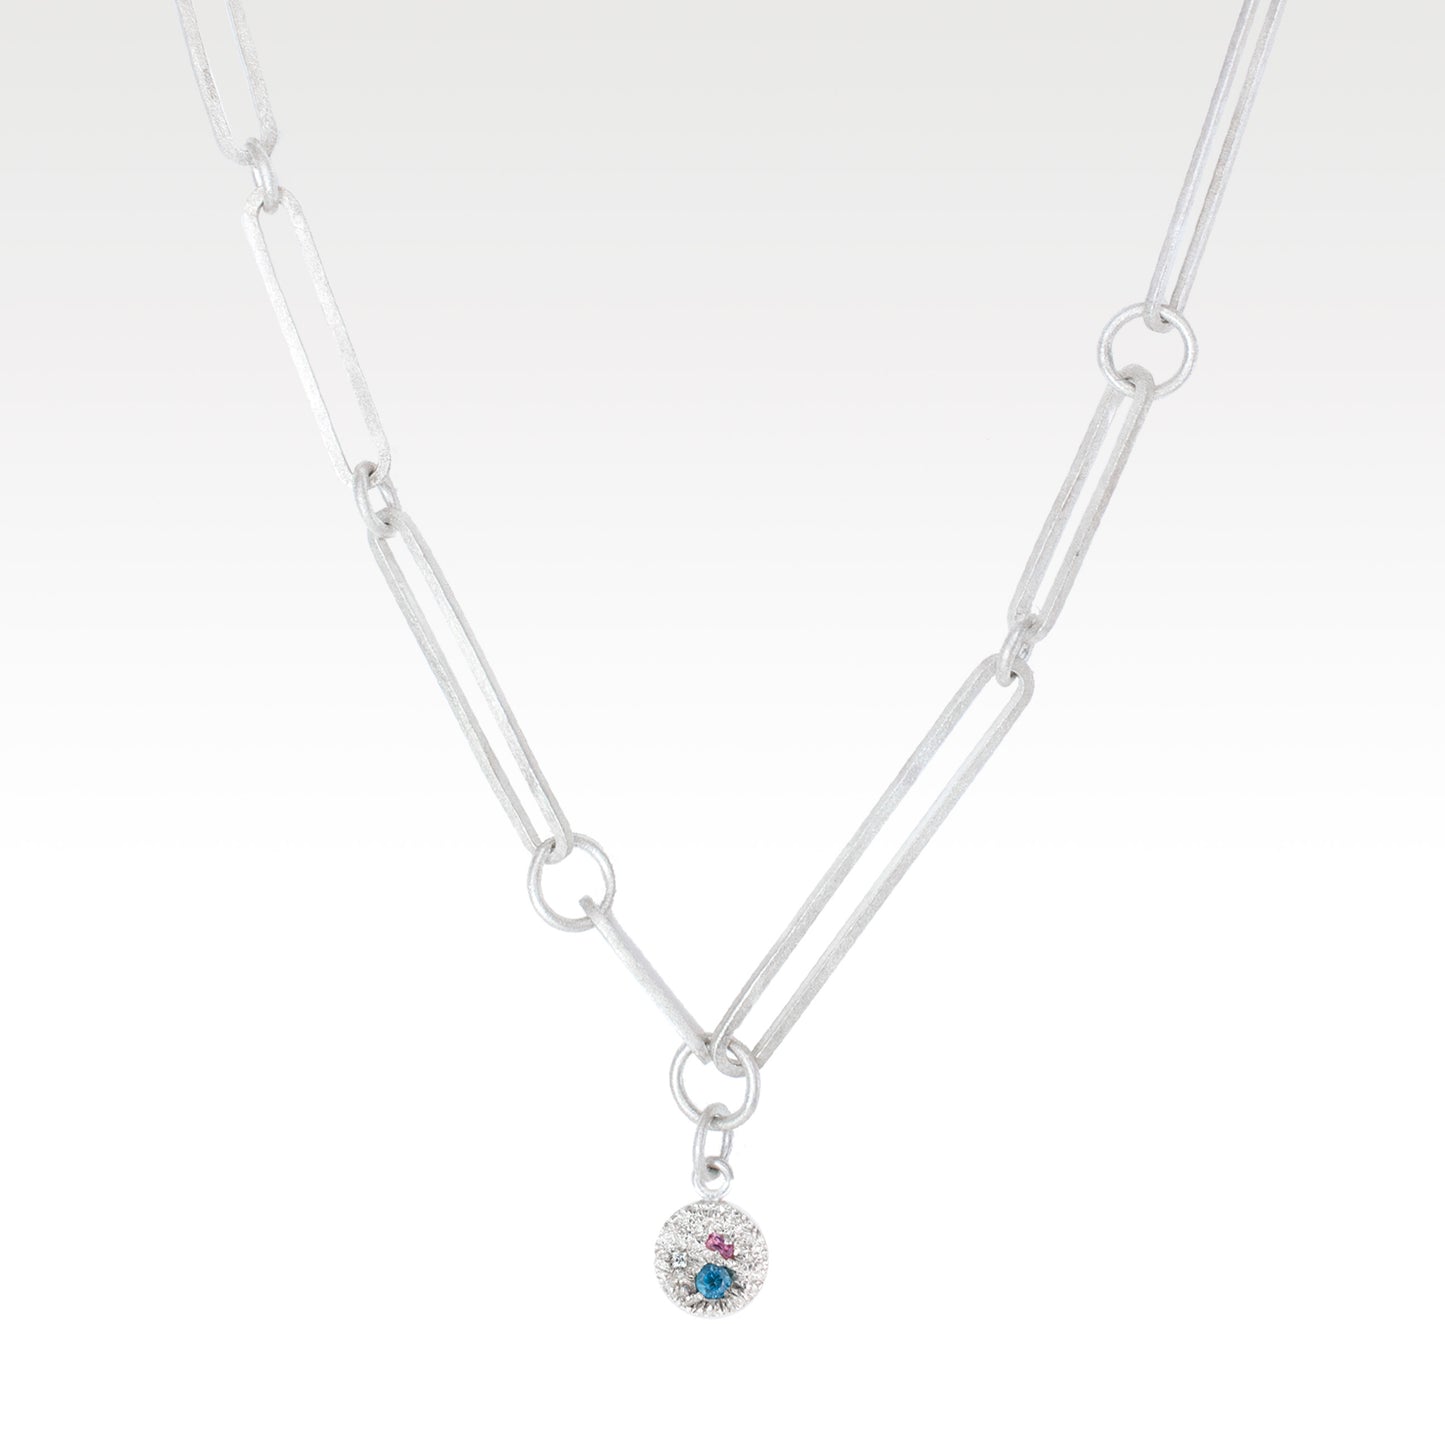 SCOTT MILLAR - Sussex Necklace with Topaz, Tourmaline & Sapphire in Silver